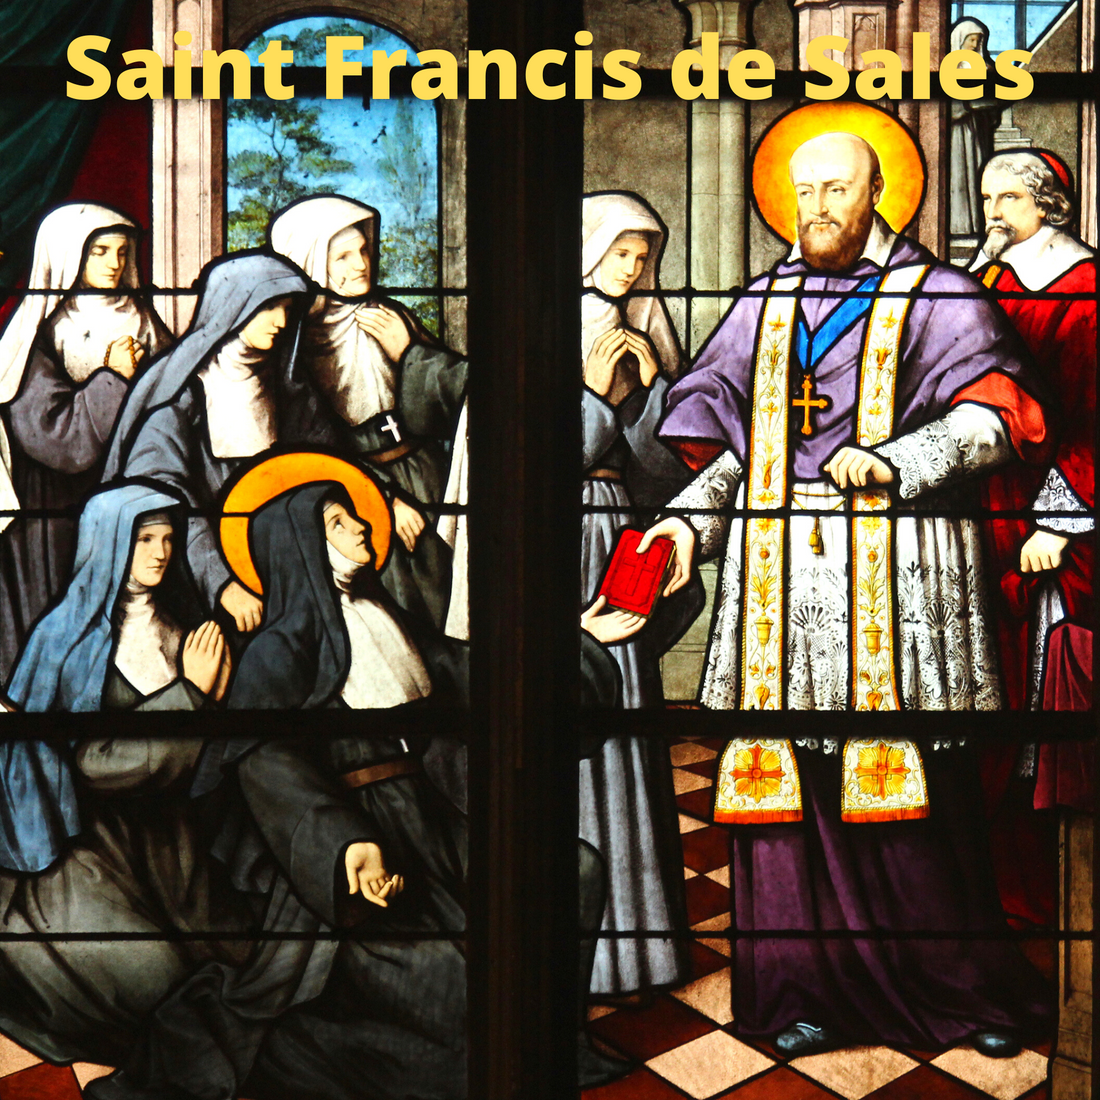 The life of Saint Francis de Sales